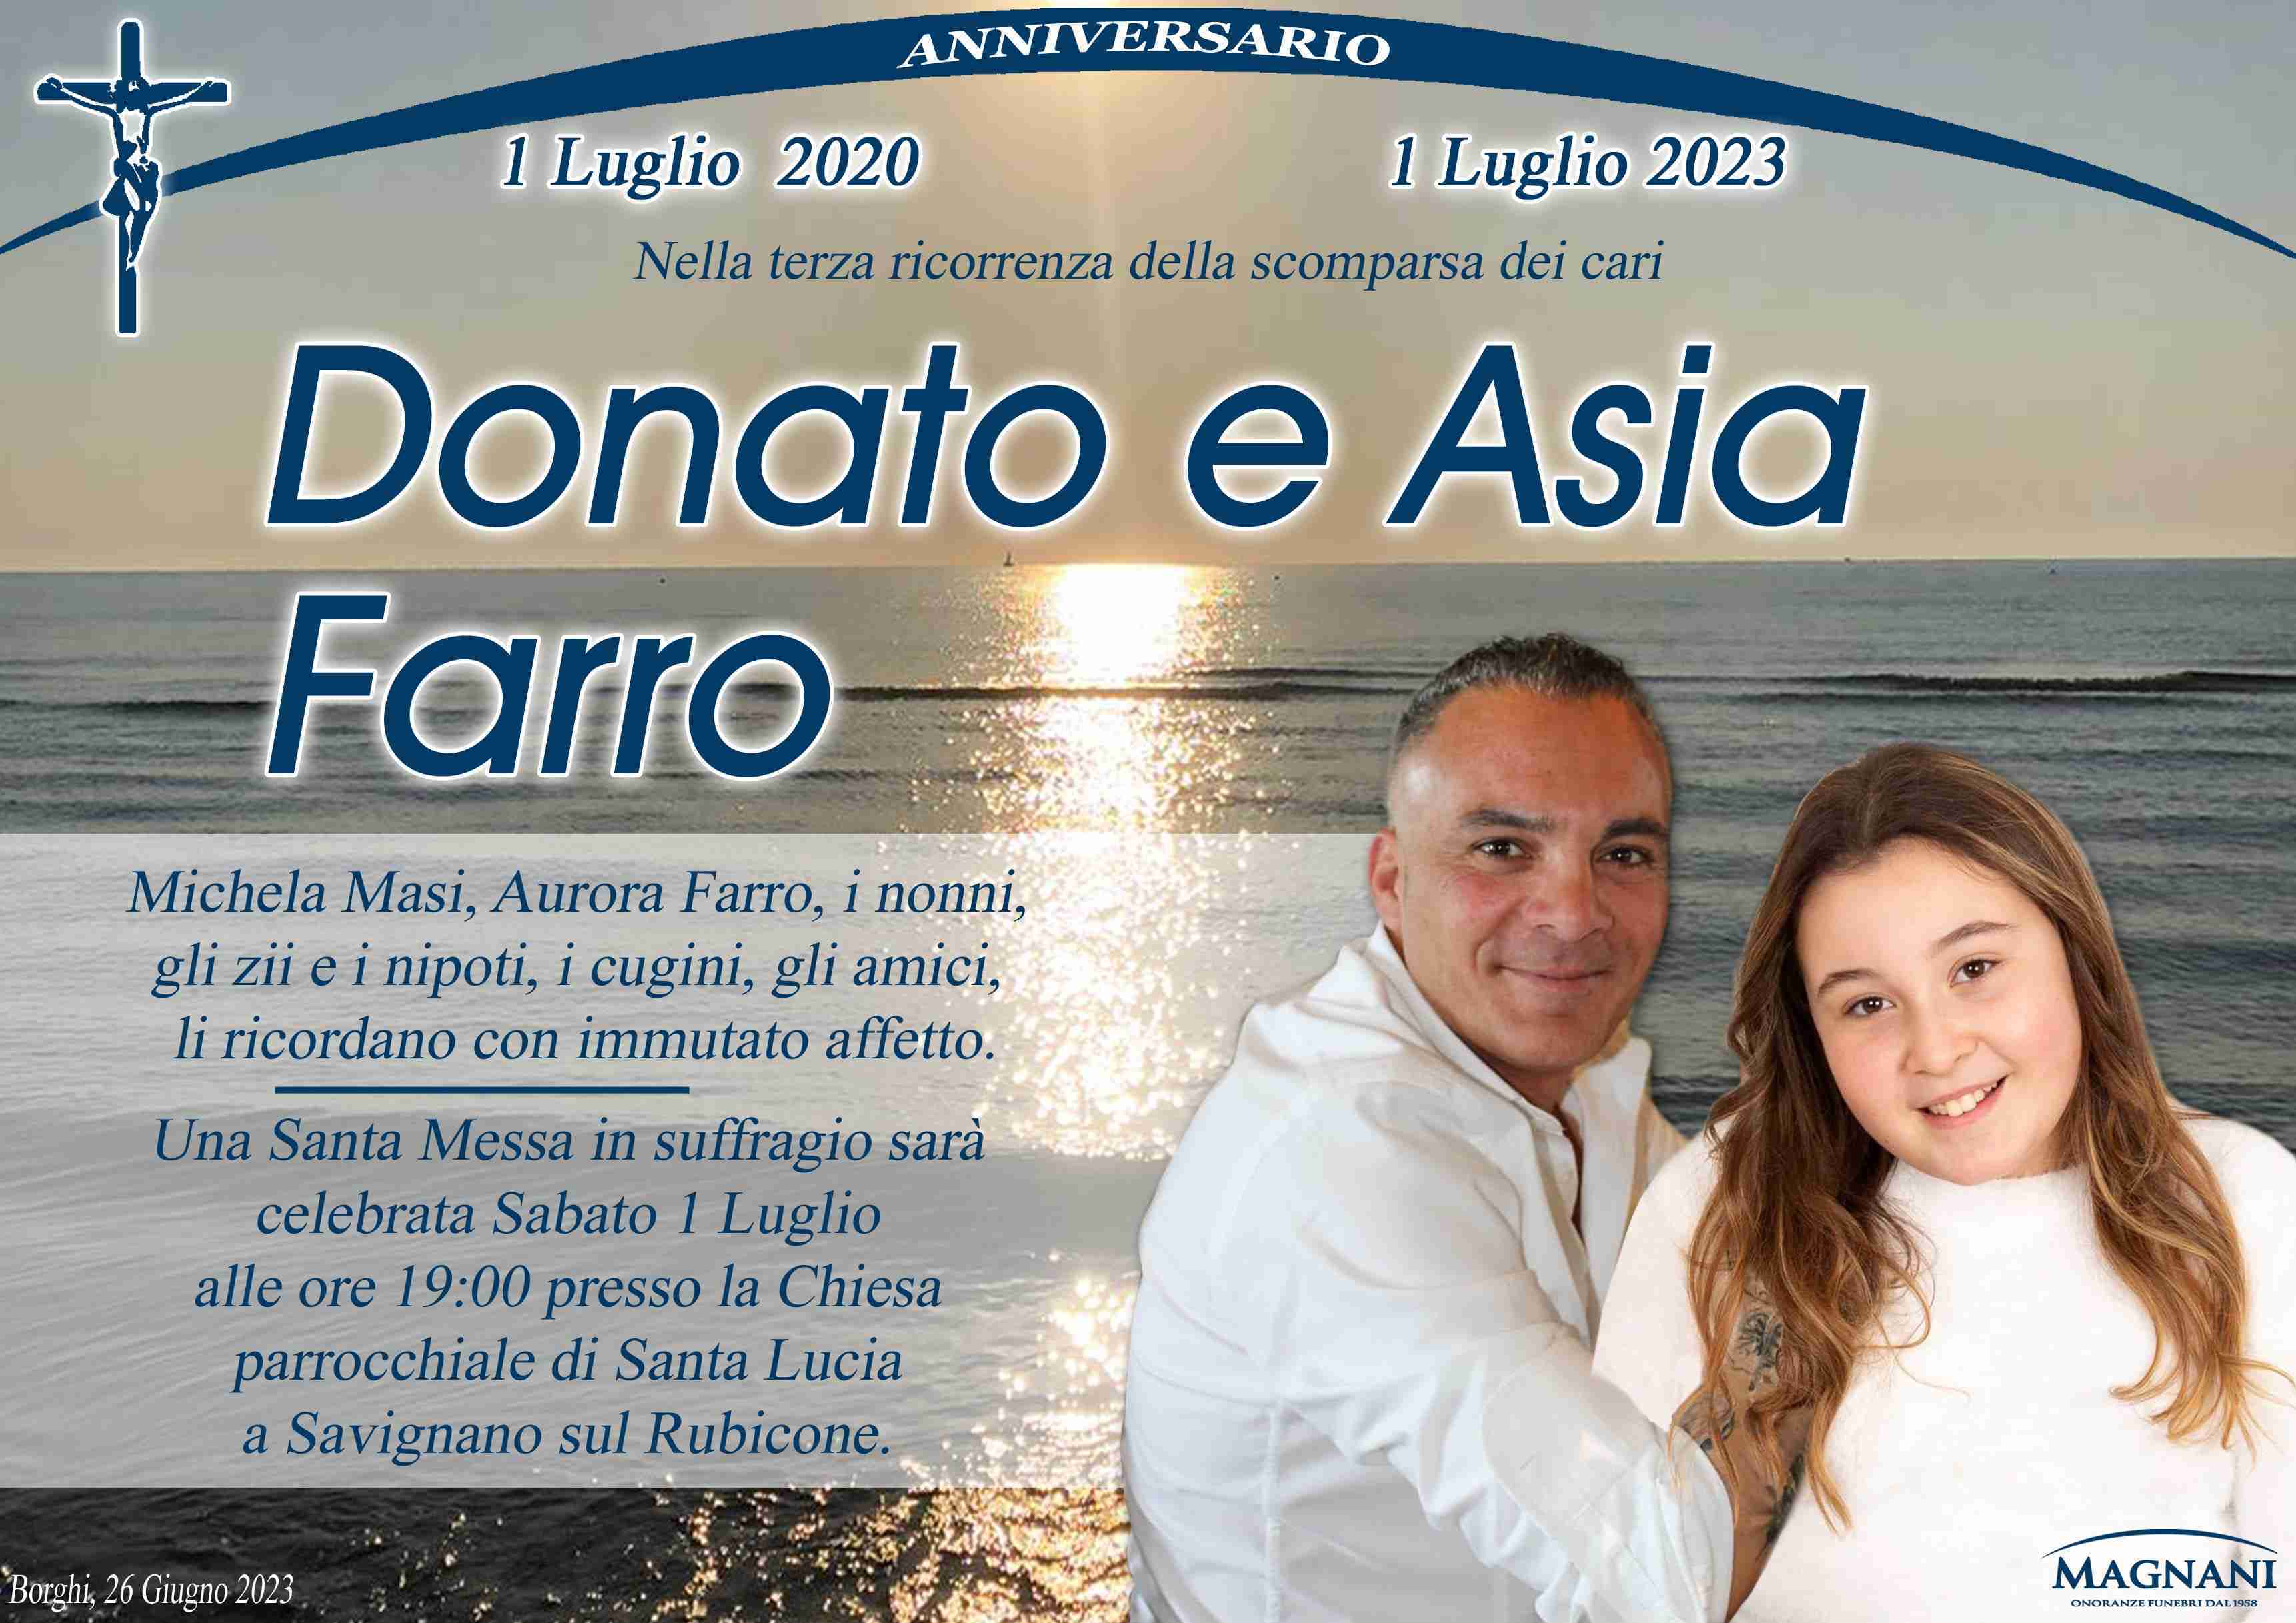 Donato e Asia Farro